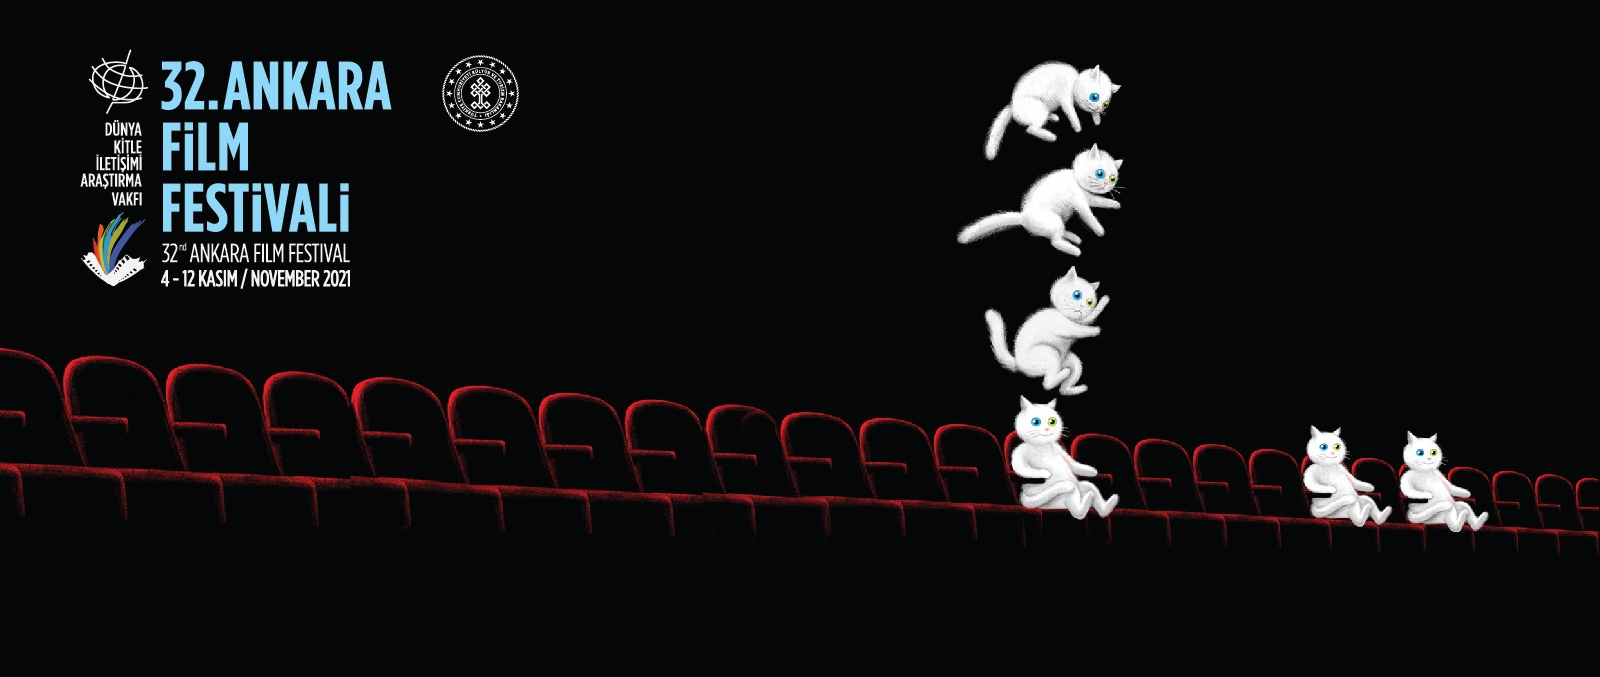 32. Ankara Film Festivali’nde Film Gösterimleri Bugün Sona Eriyor!